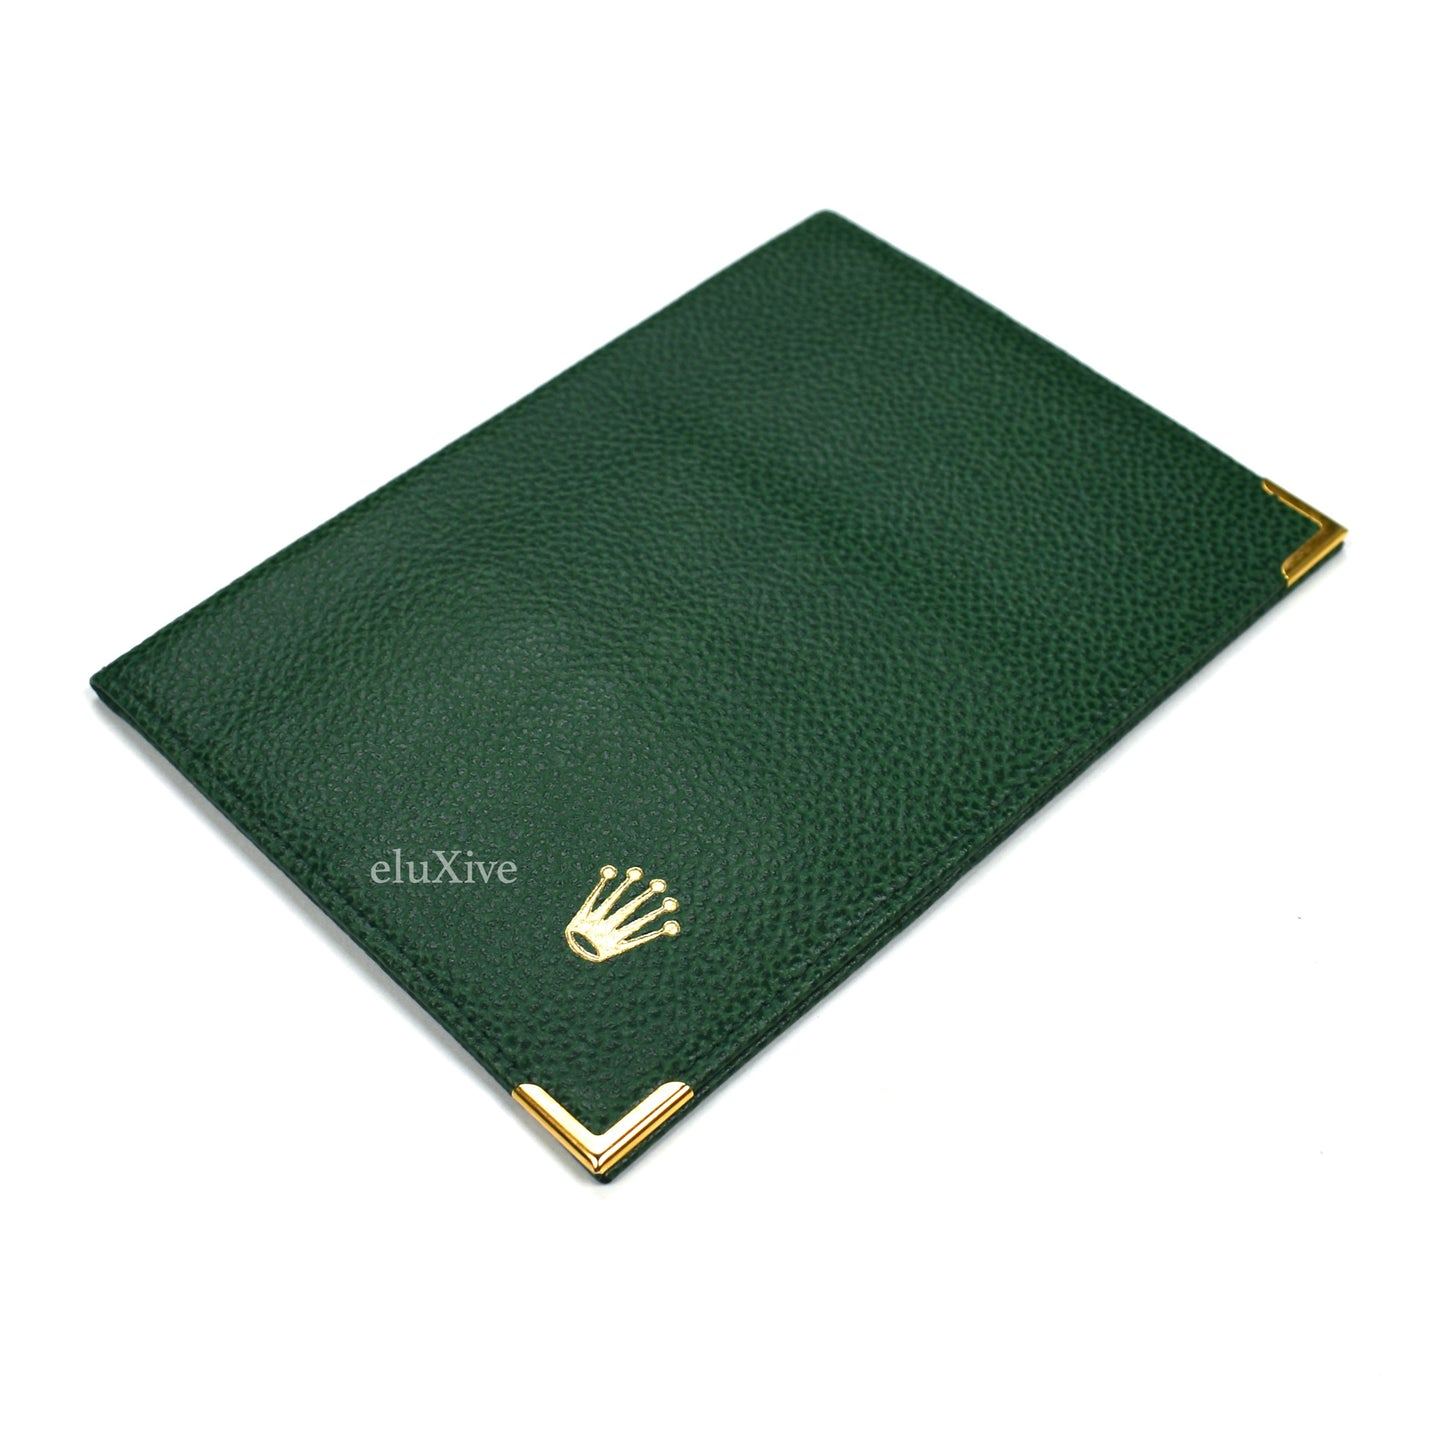 Rolex - Dark Green Leather Wallet